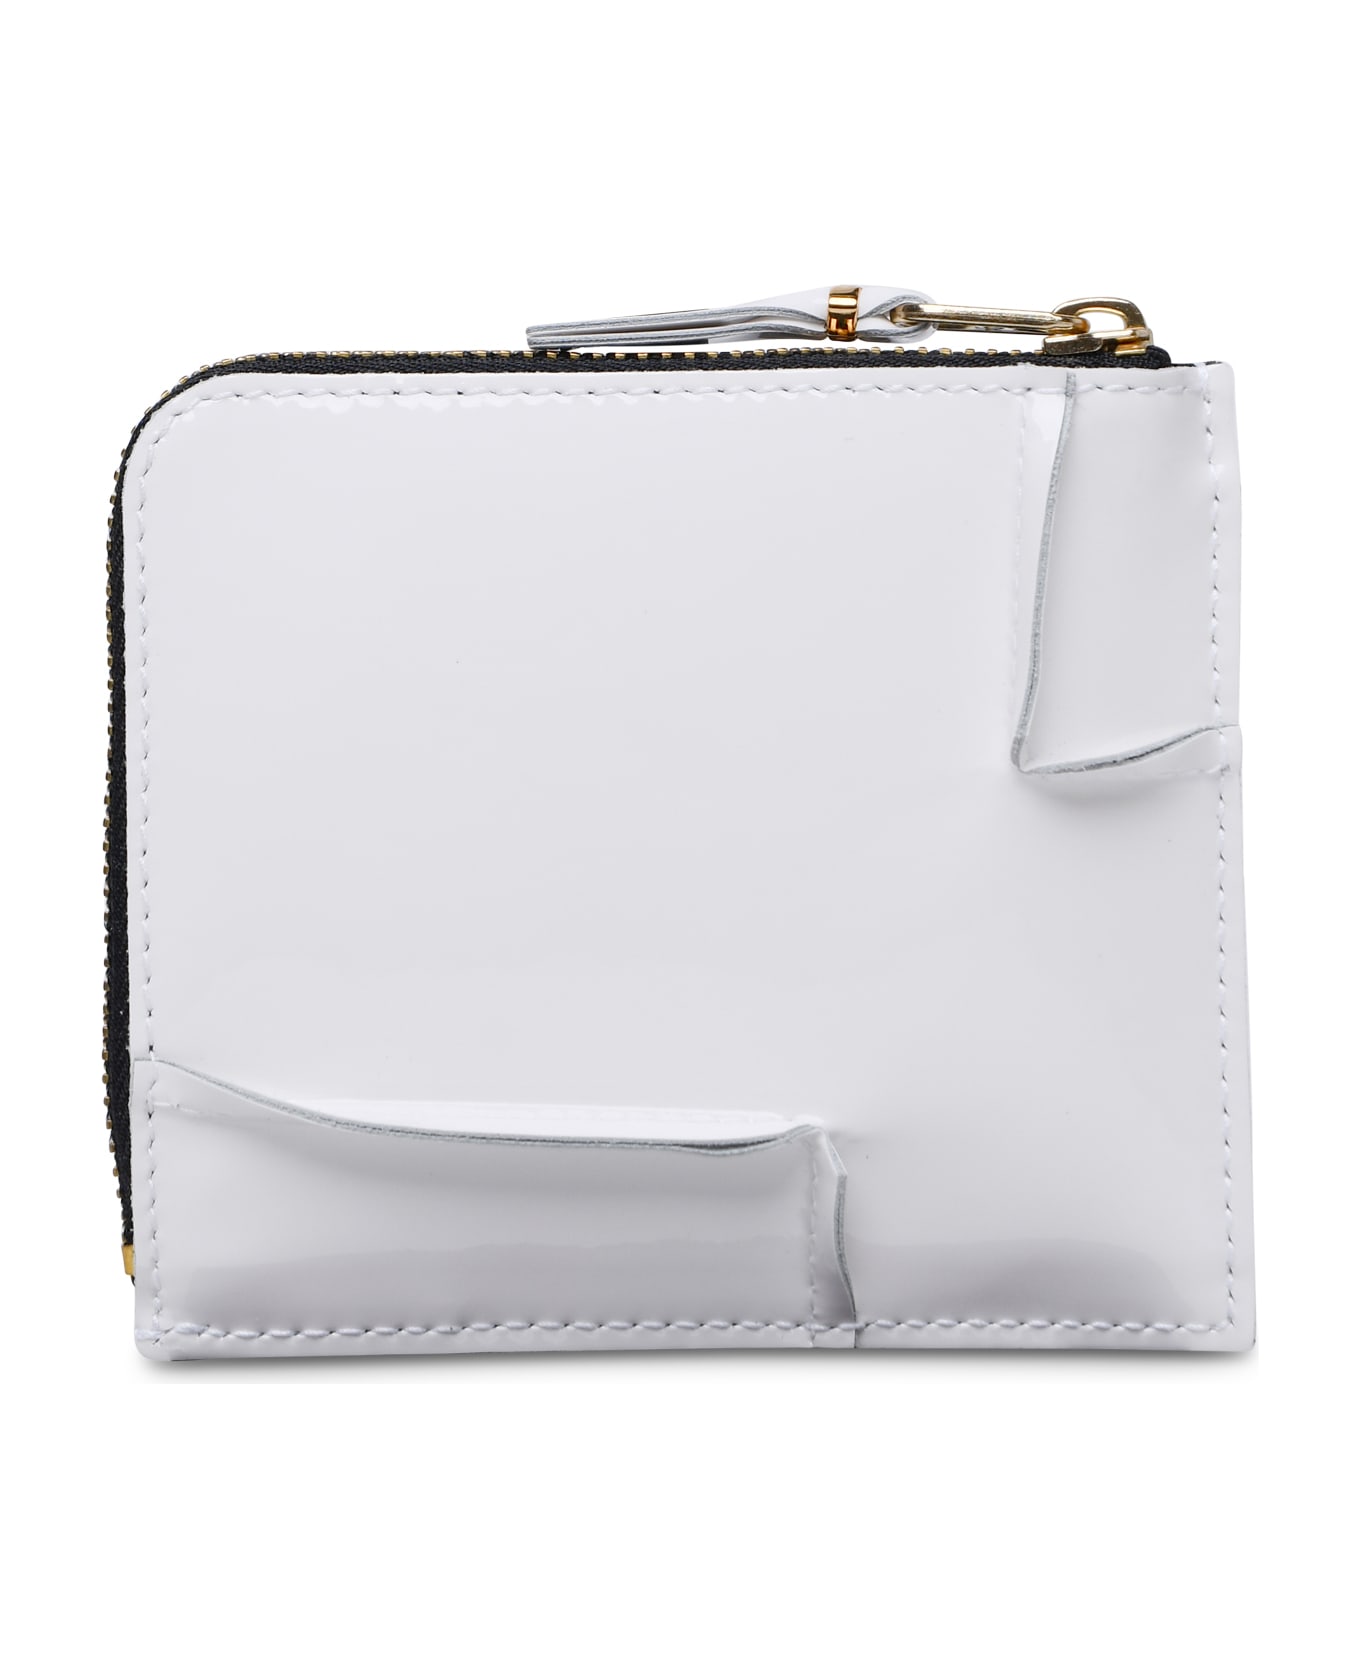 Comme des Garçons Wallet 'medley' White Leather Wallet - White 財布